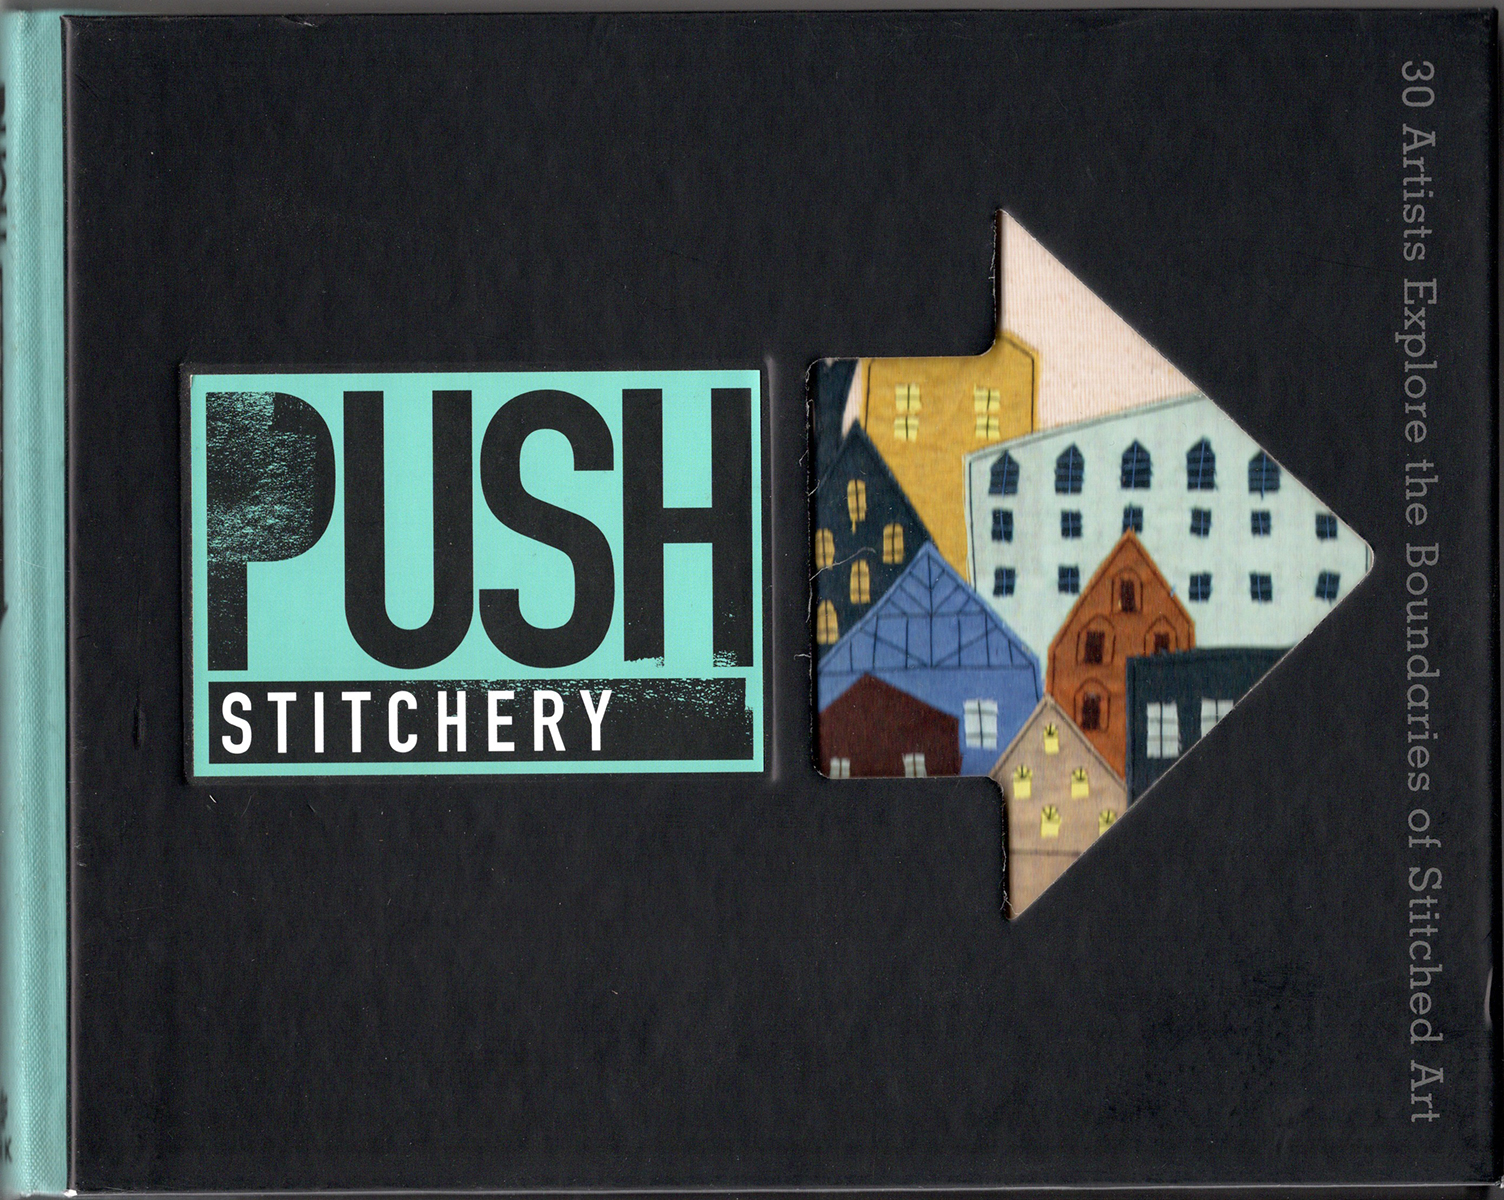 Push Stichery by Jamie Chalmers